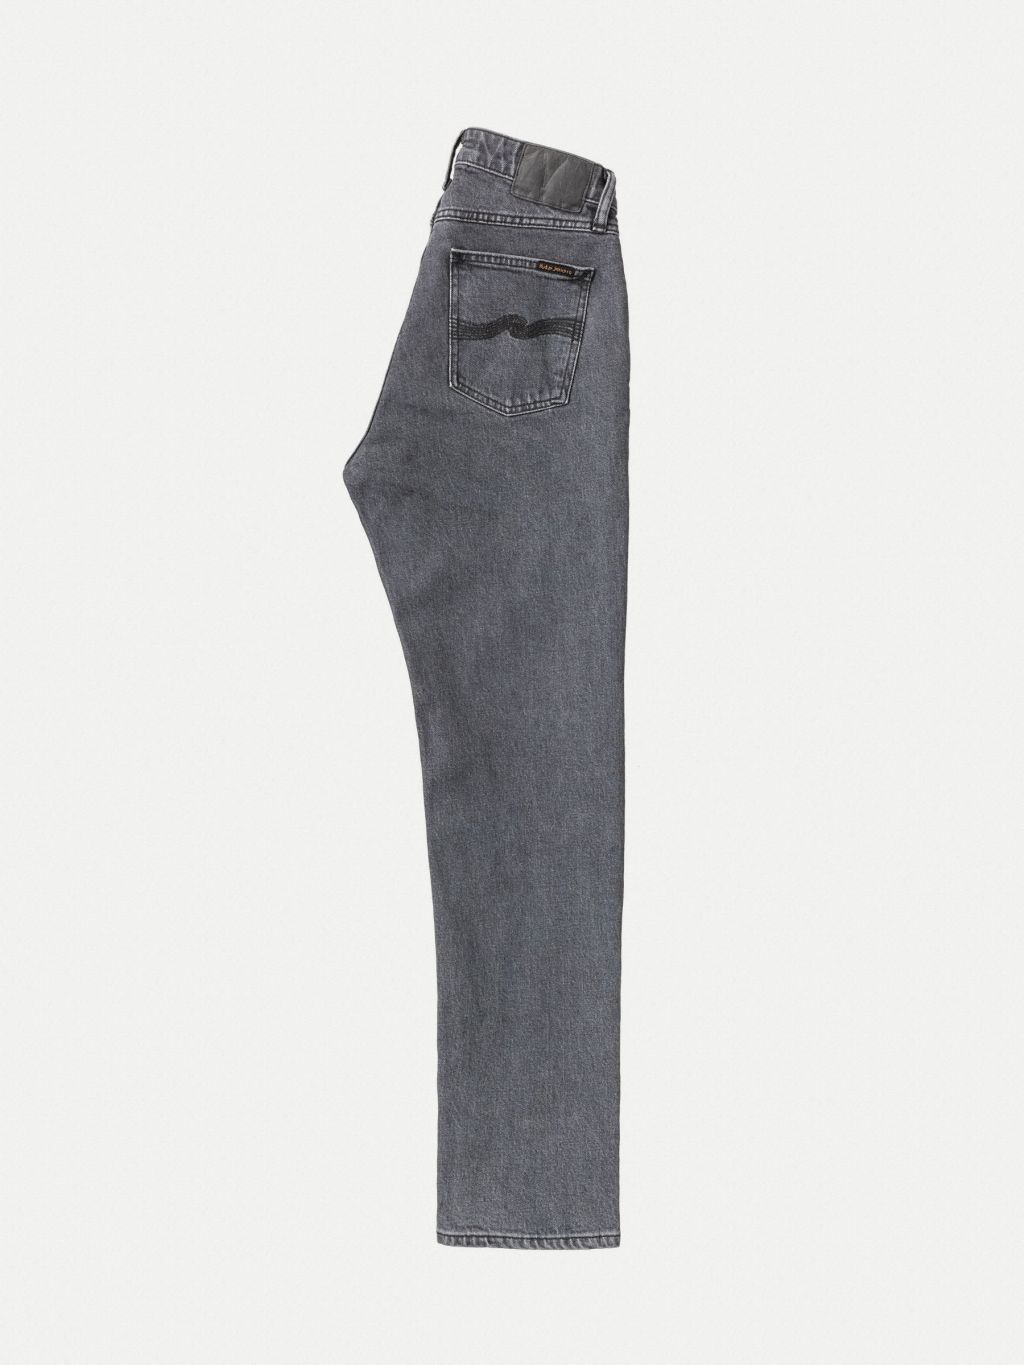 Straight Sally Mid Waist Jeans - Grey Ash 28/30